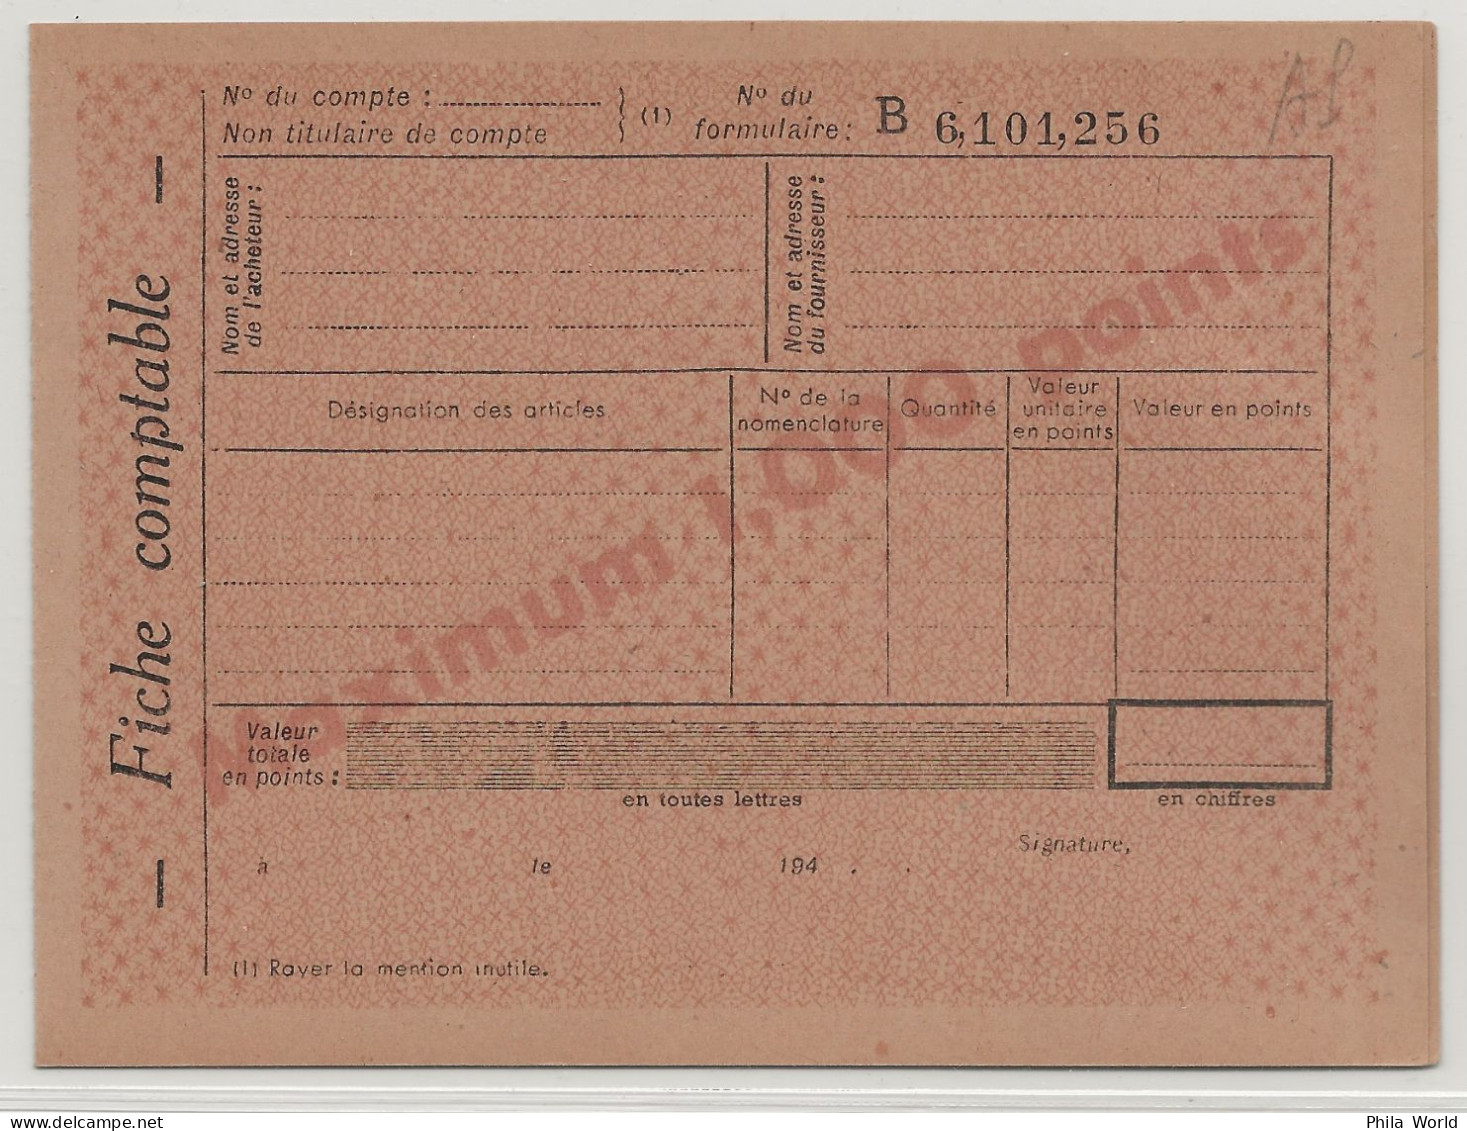 WW2 - Entier Postal 1,20 F PETAIN D9 A Avec Fiche Comptable Cheque Points Carte Postale Service Postal Stationery - Seconda Guerra Mondiale